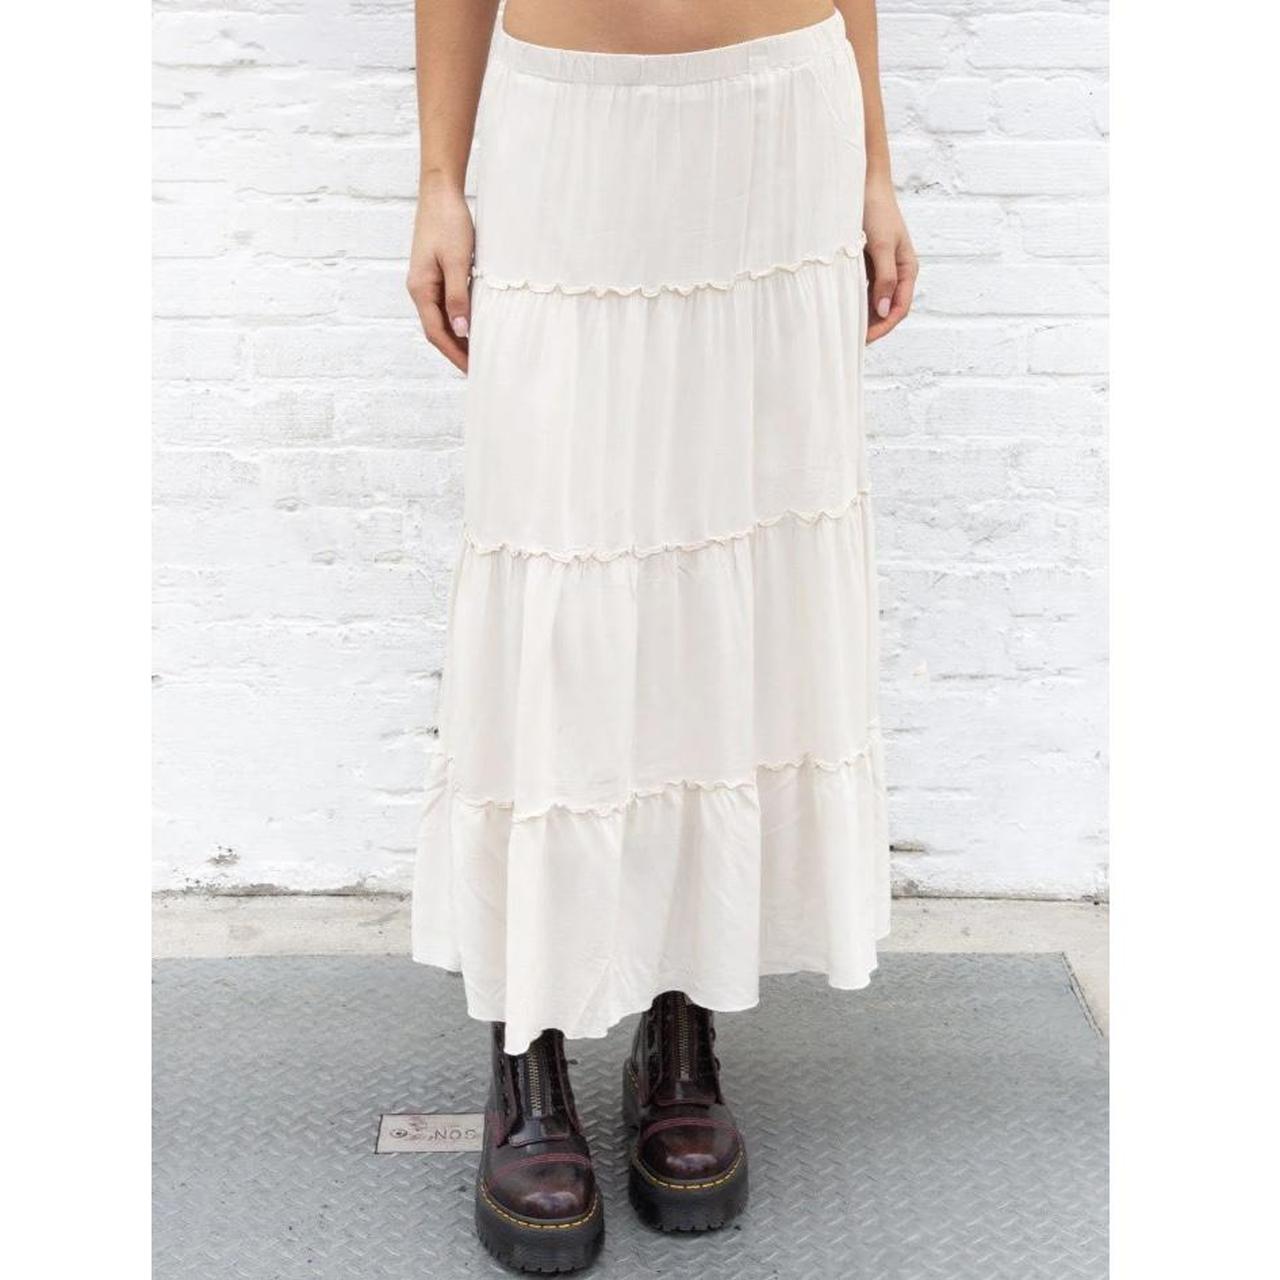 Brandy Melville white Izzy skirt Long maxi skirt,... - Depop